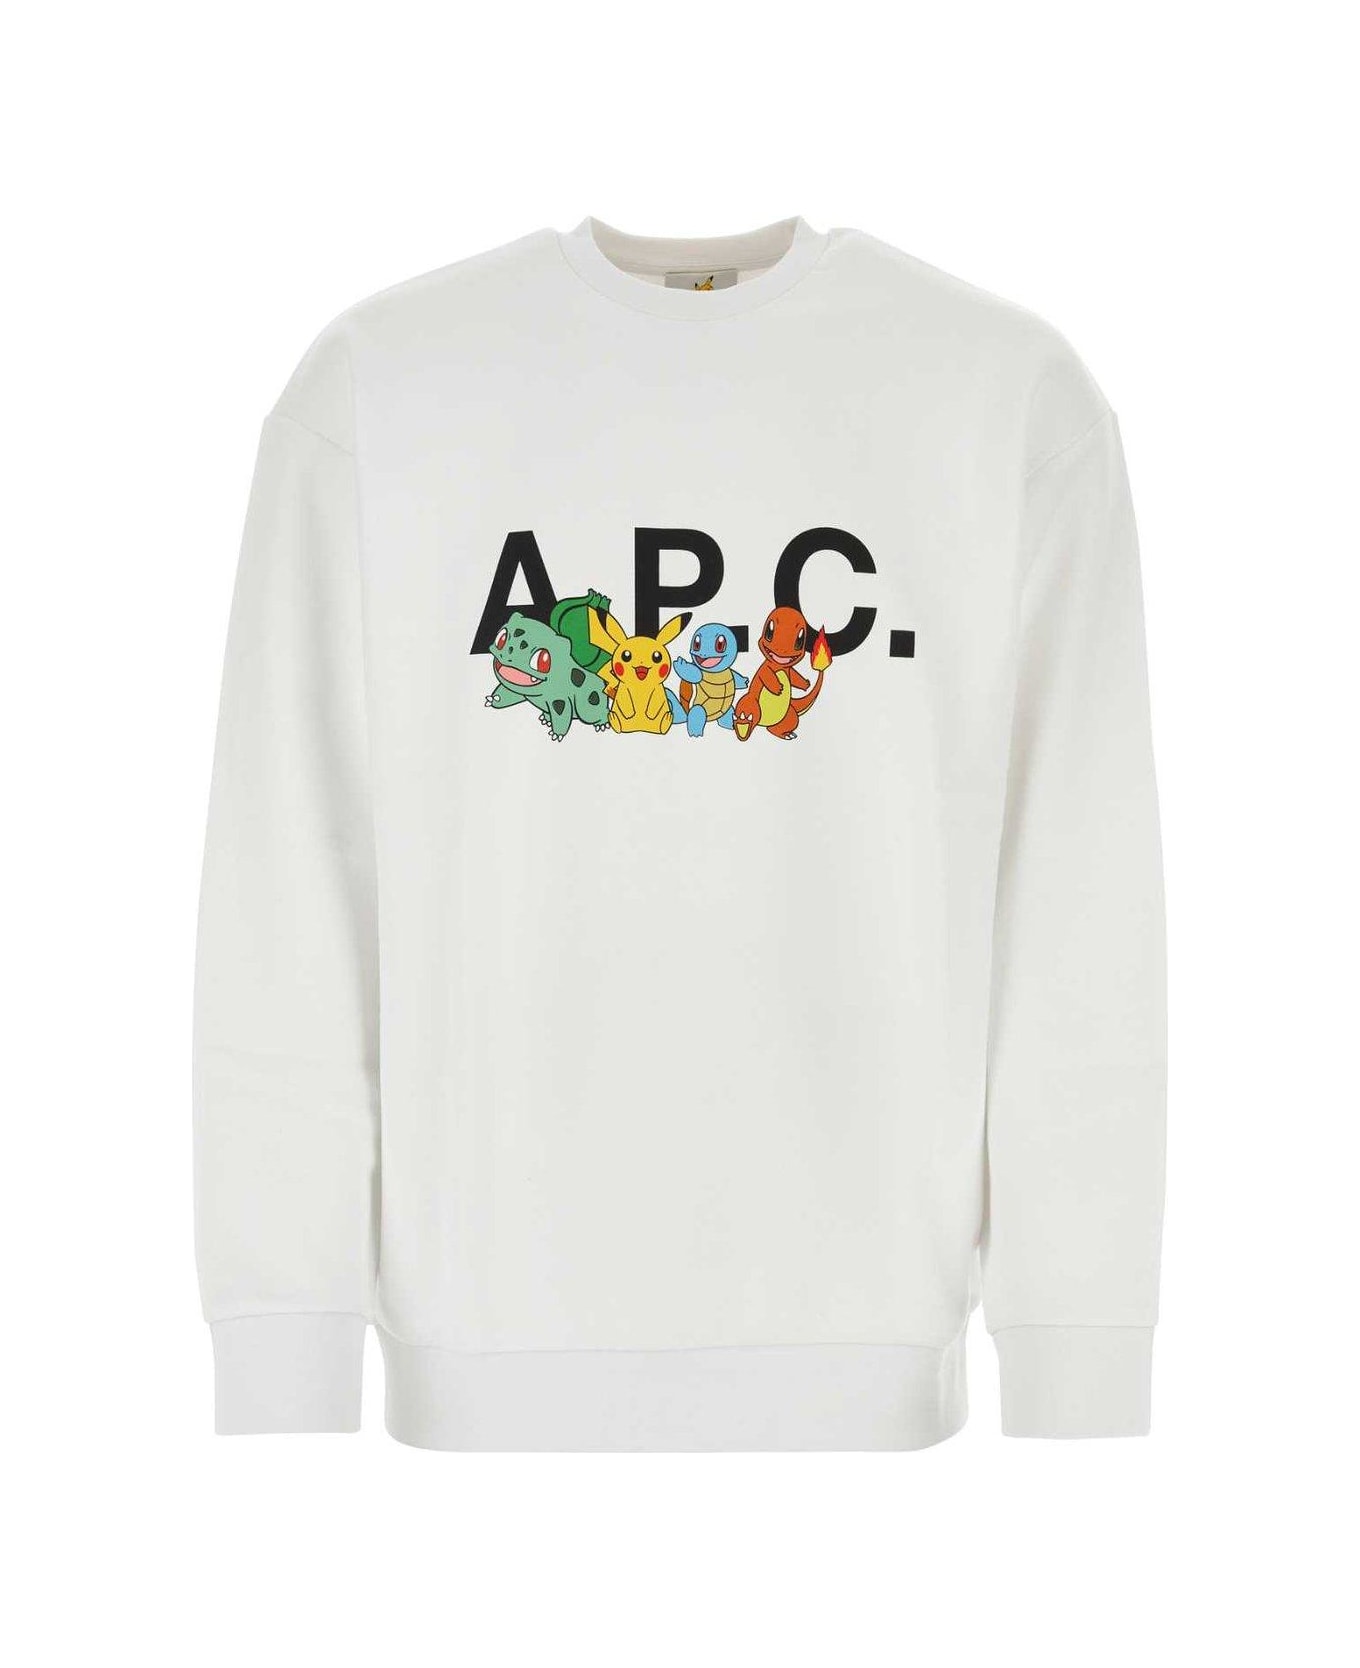 A.P.C. Pokèmon Crewneck Sweatshirt - multicolor